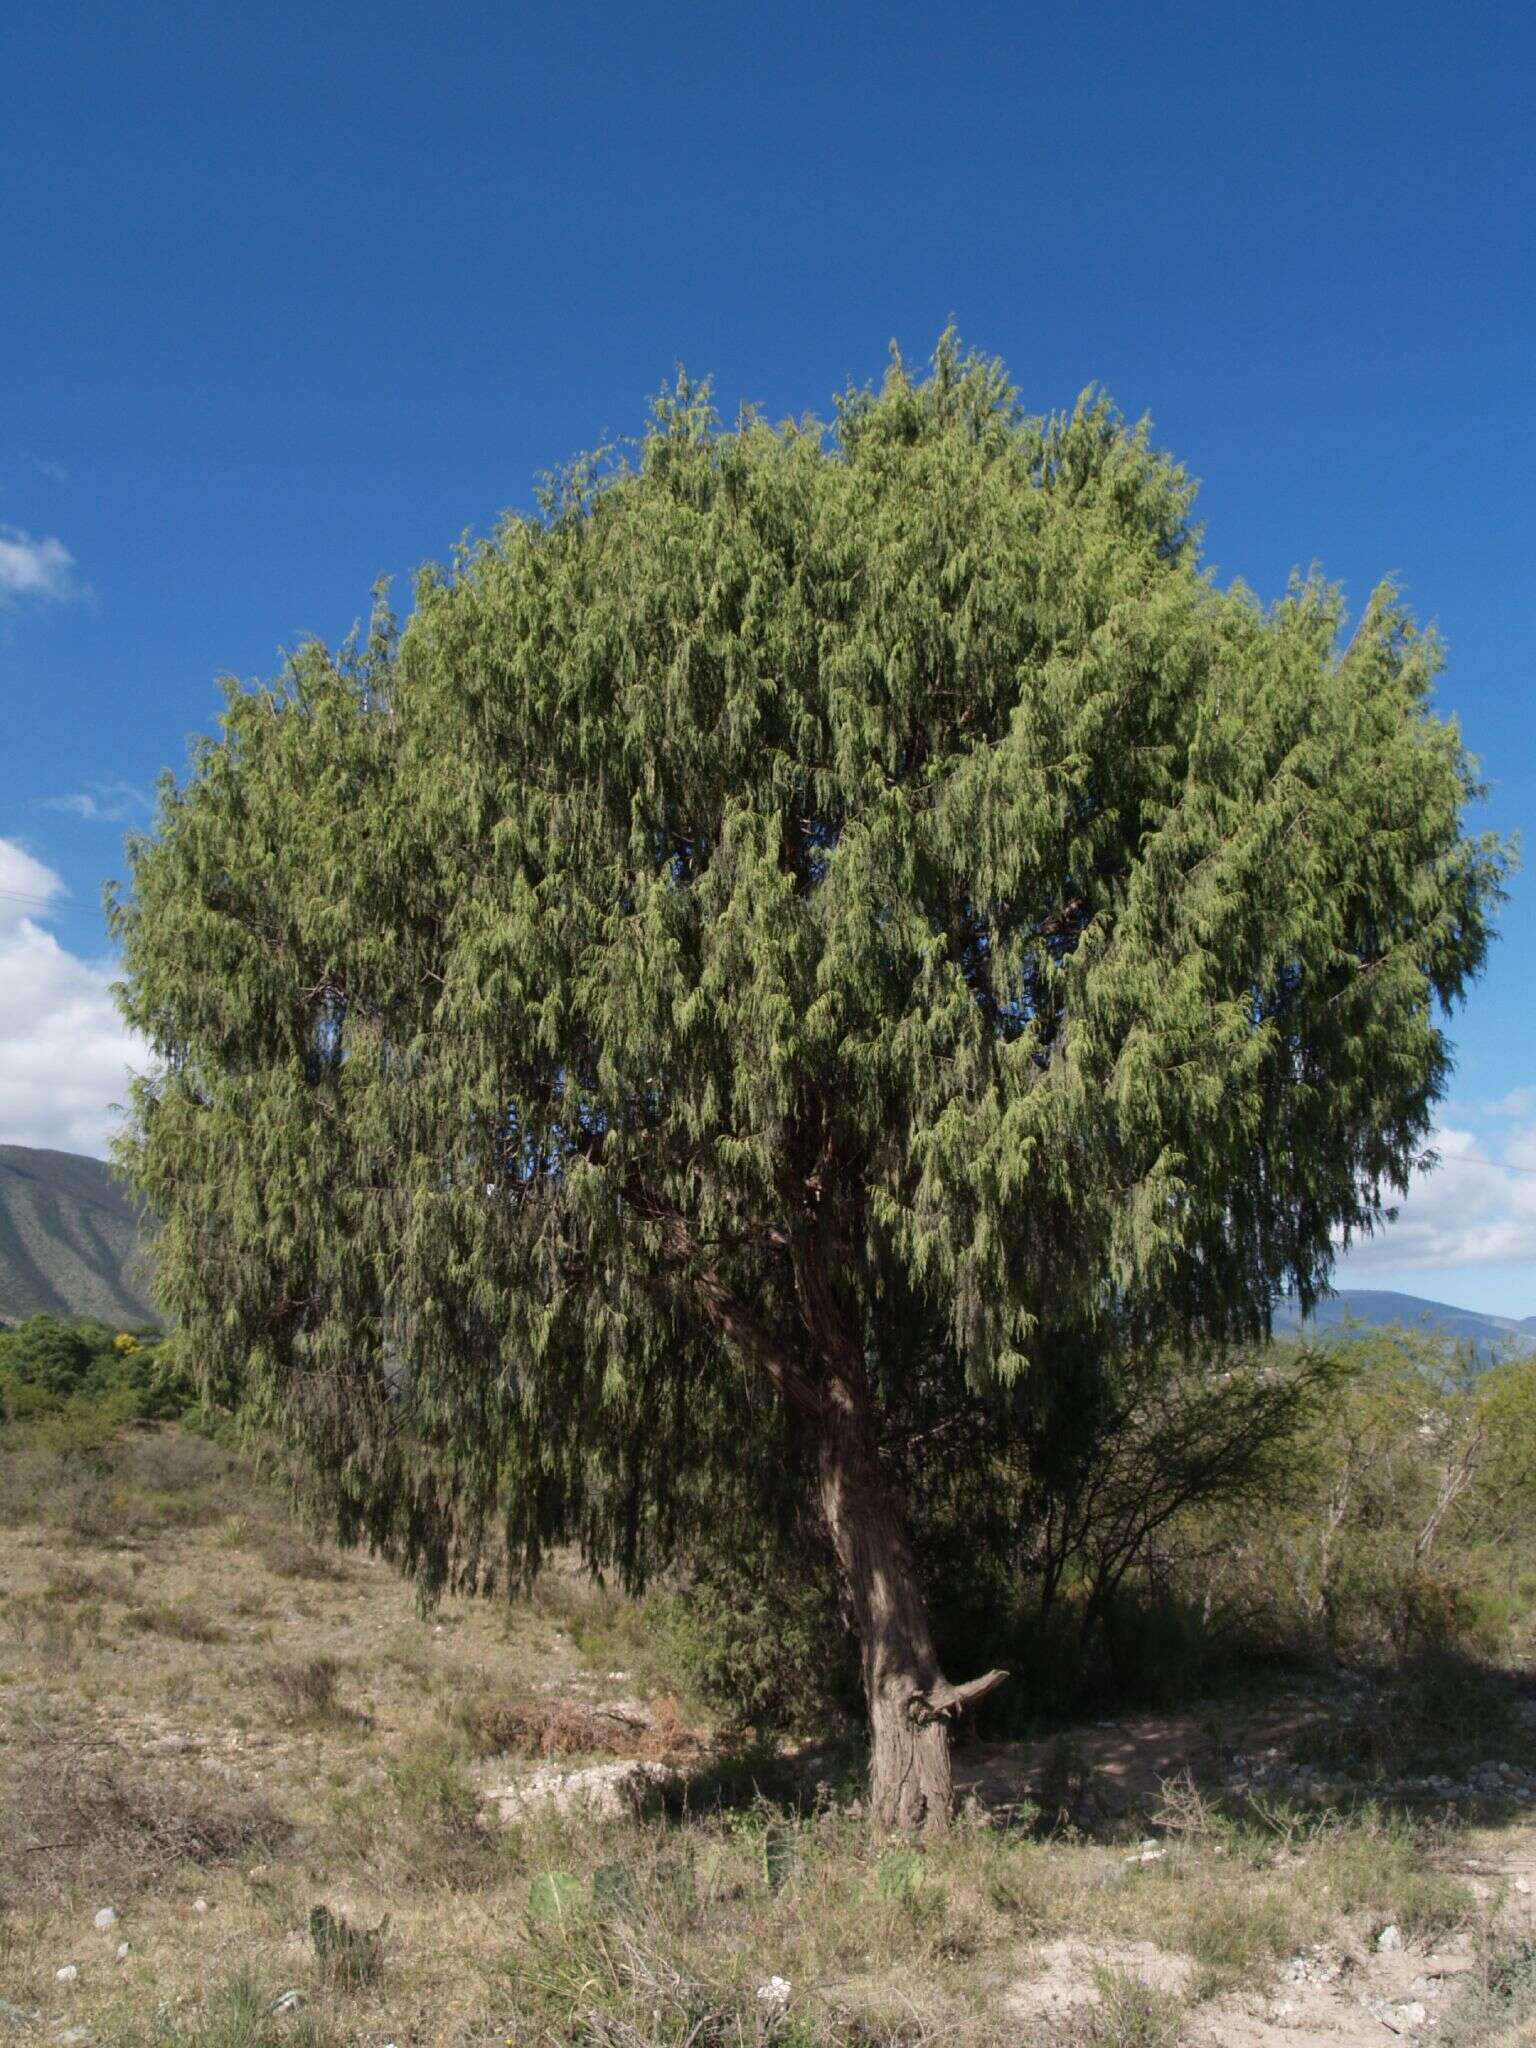 Image of juniper